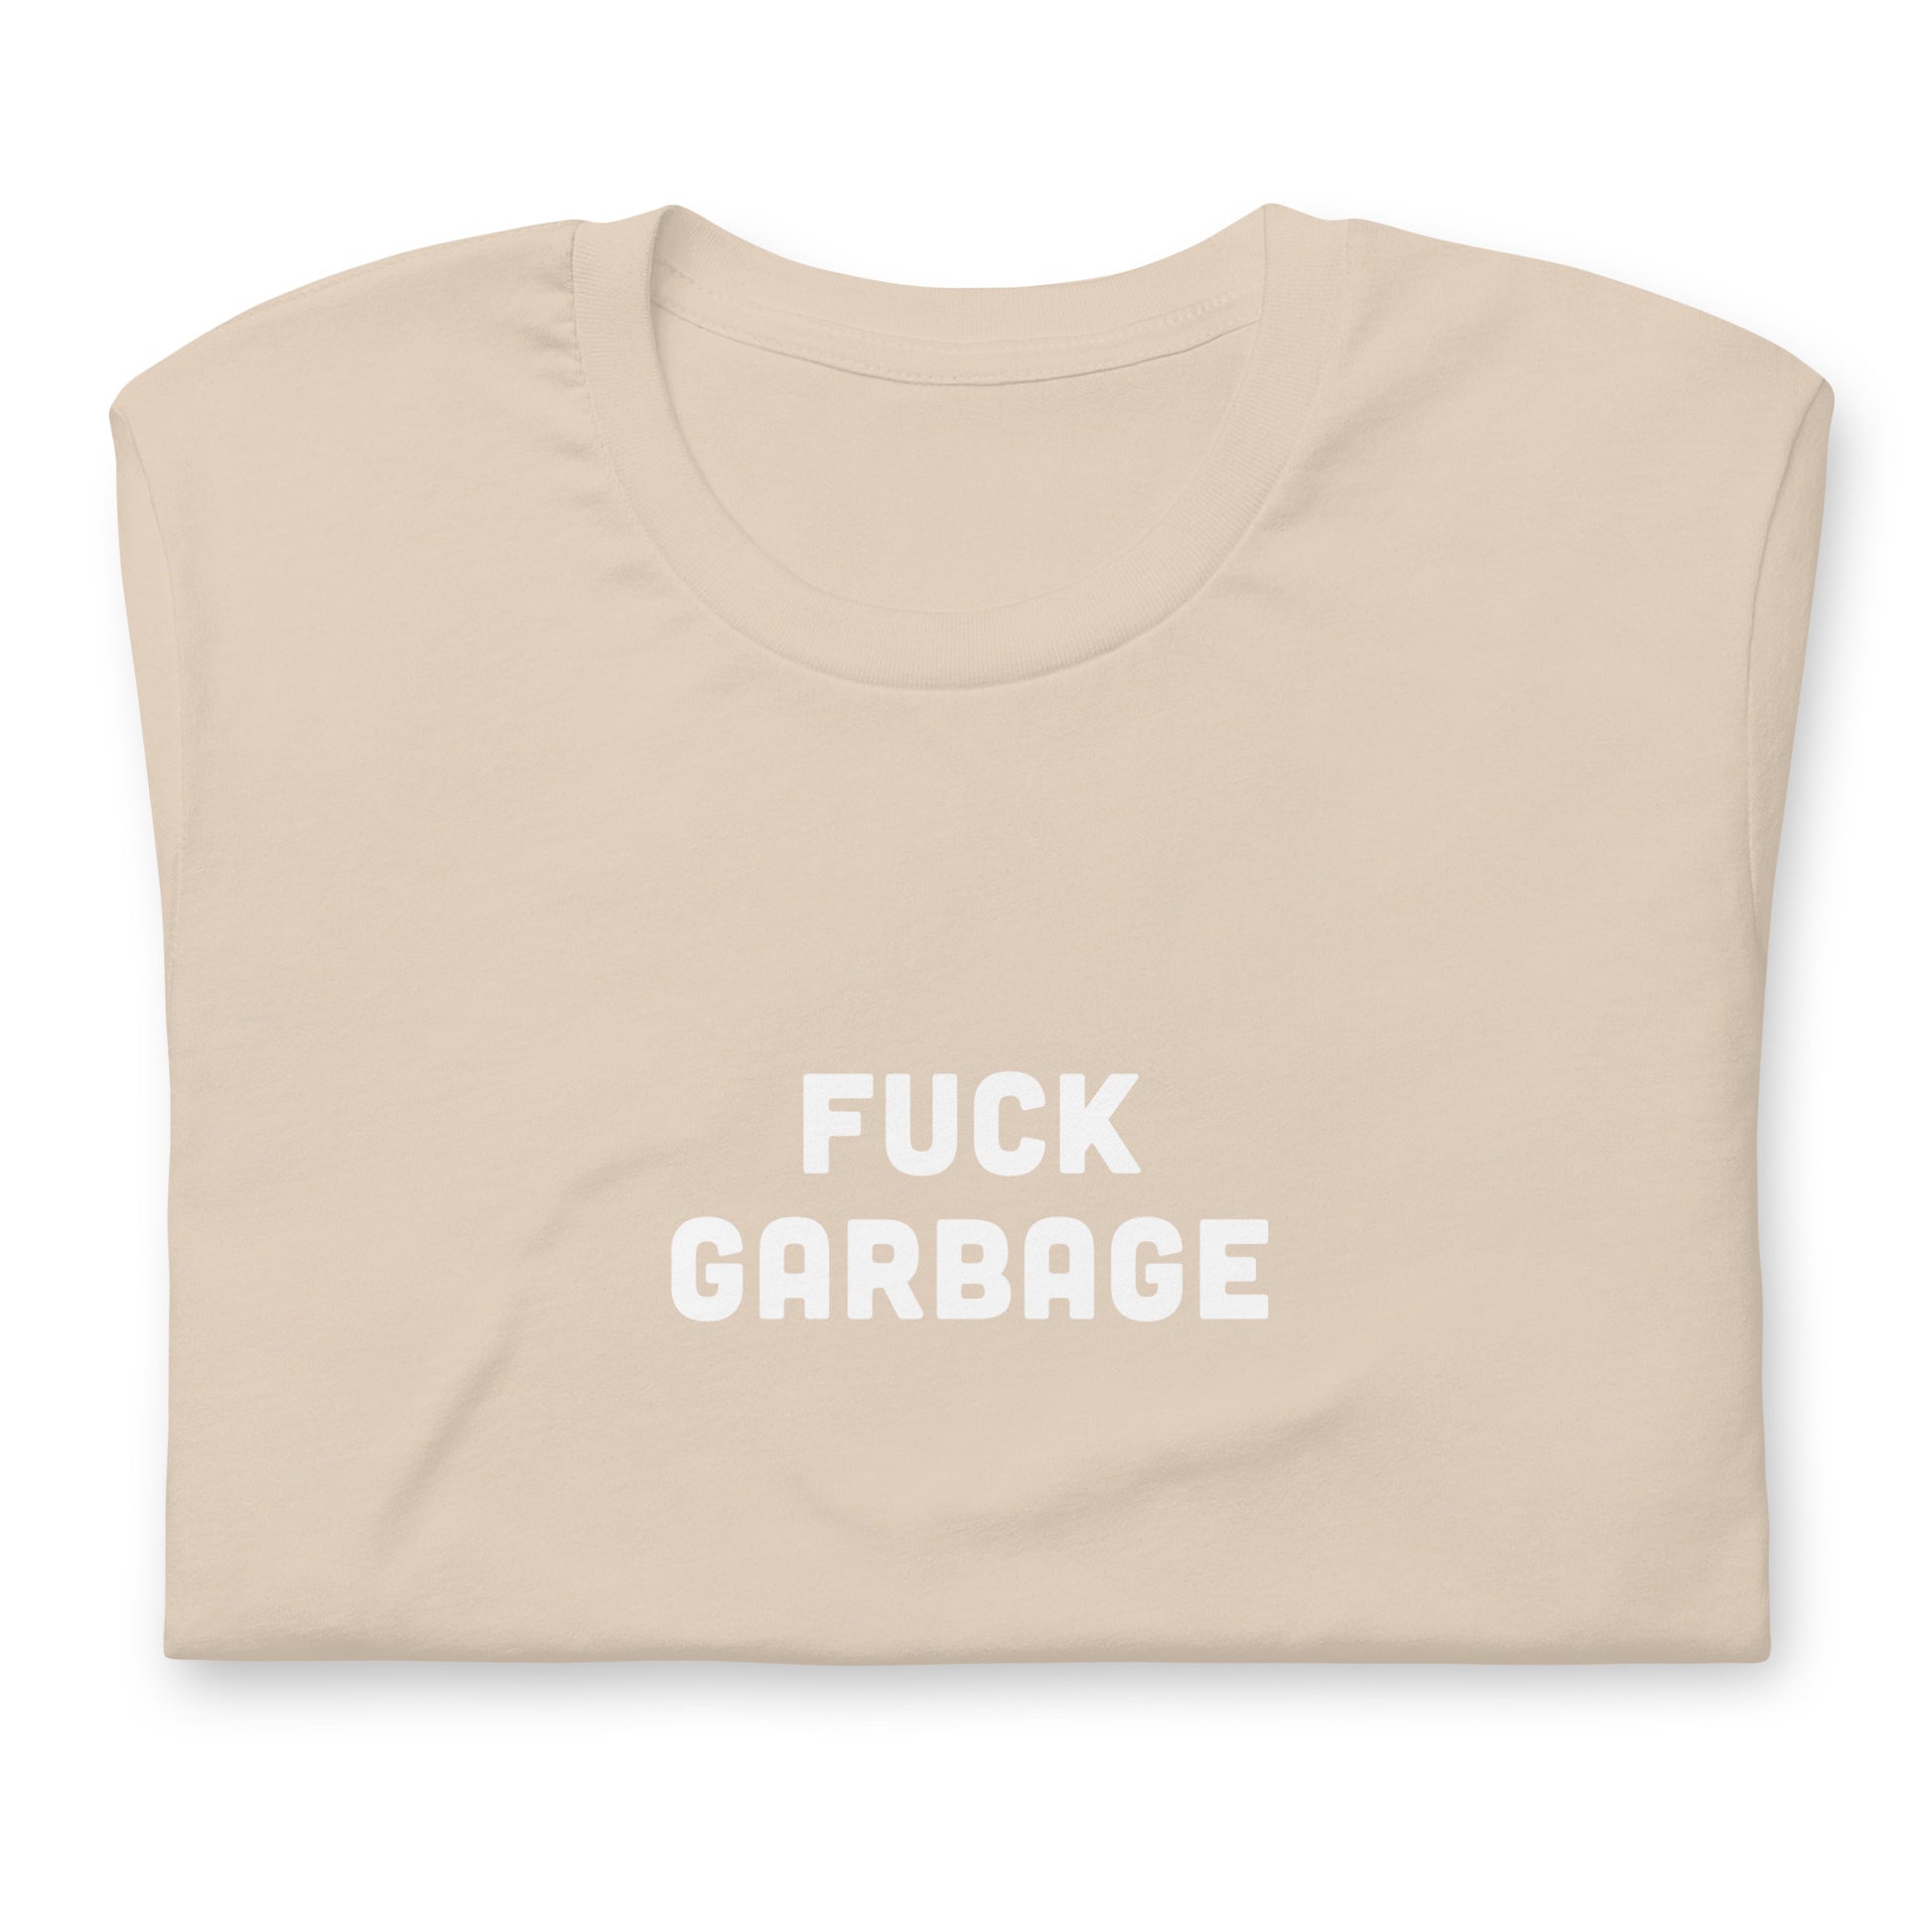 Fuck Garbage T-Shirt Size L Color Asphalt